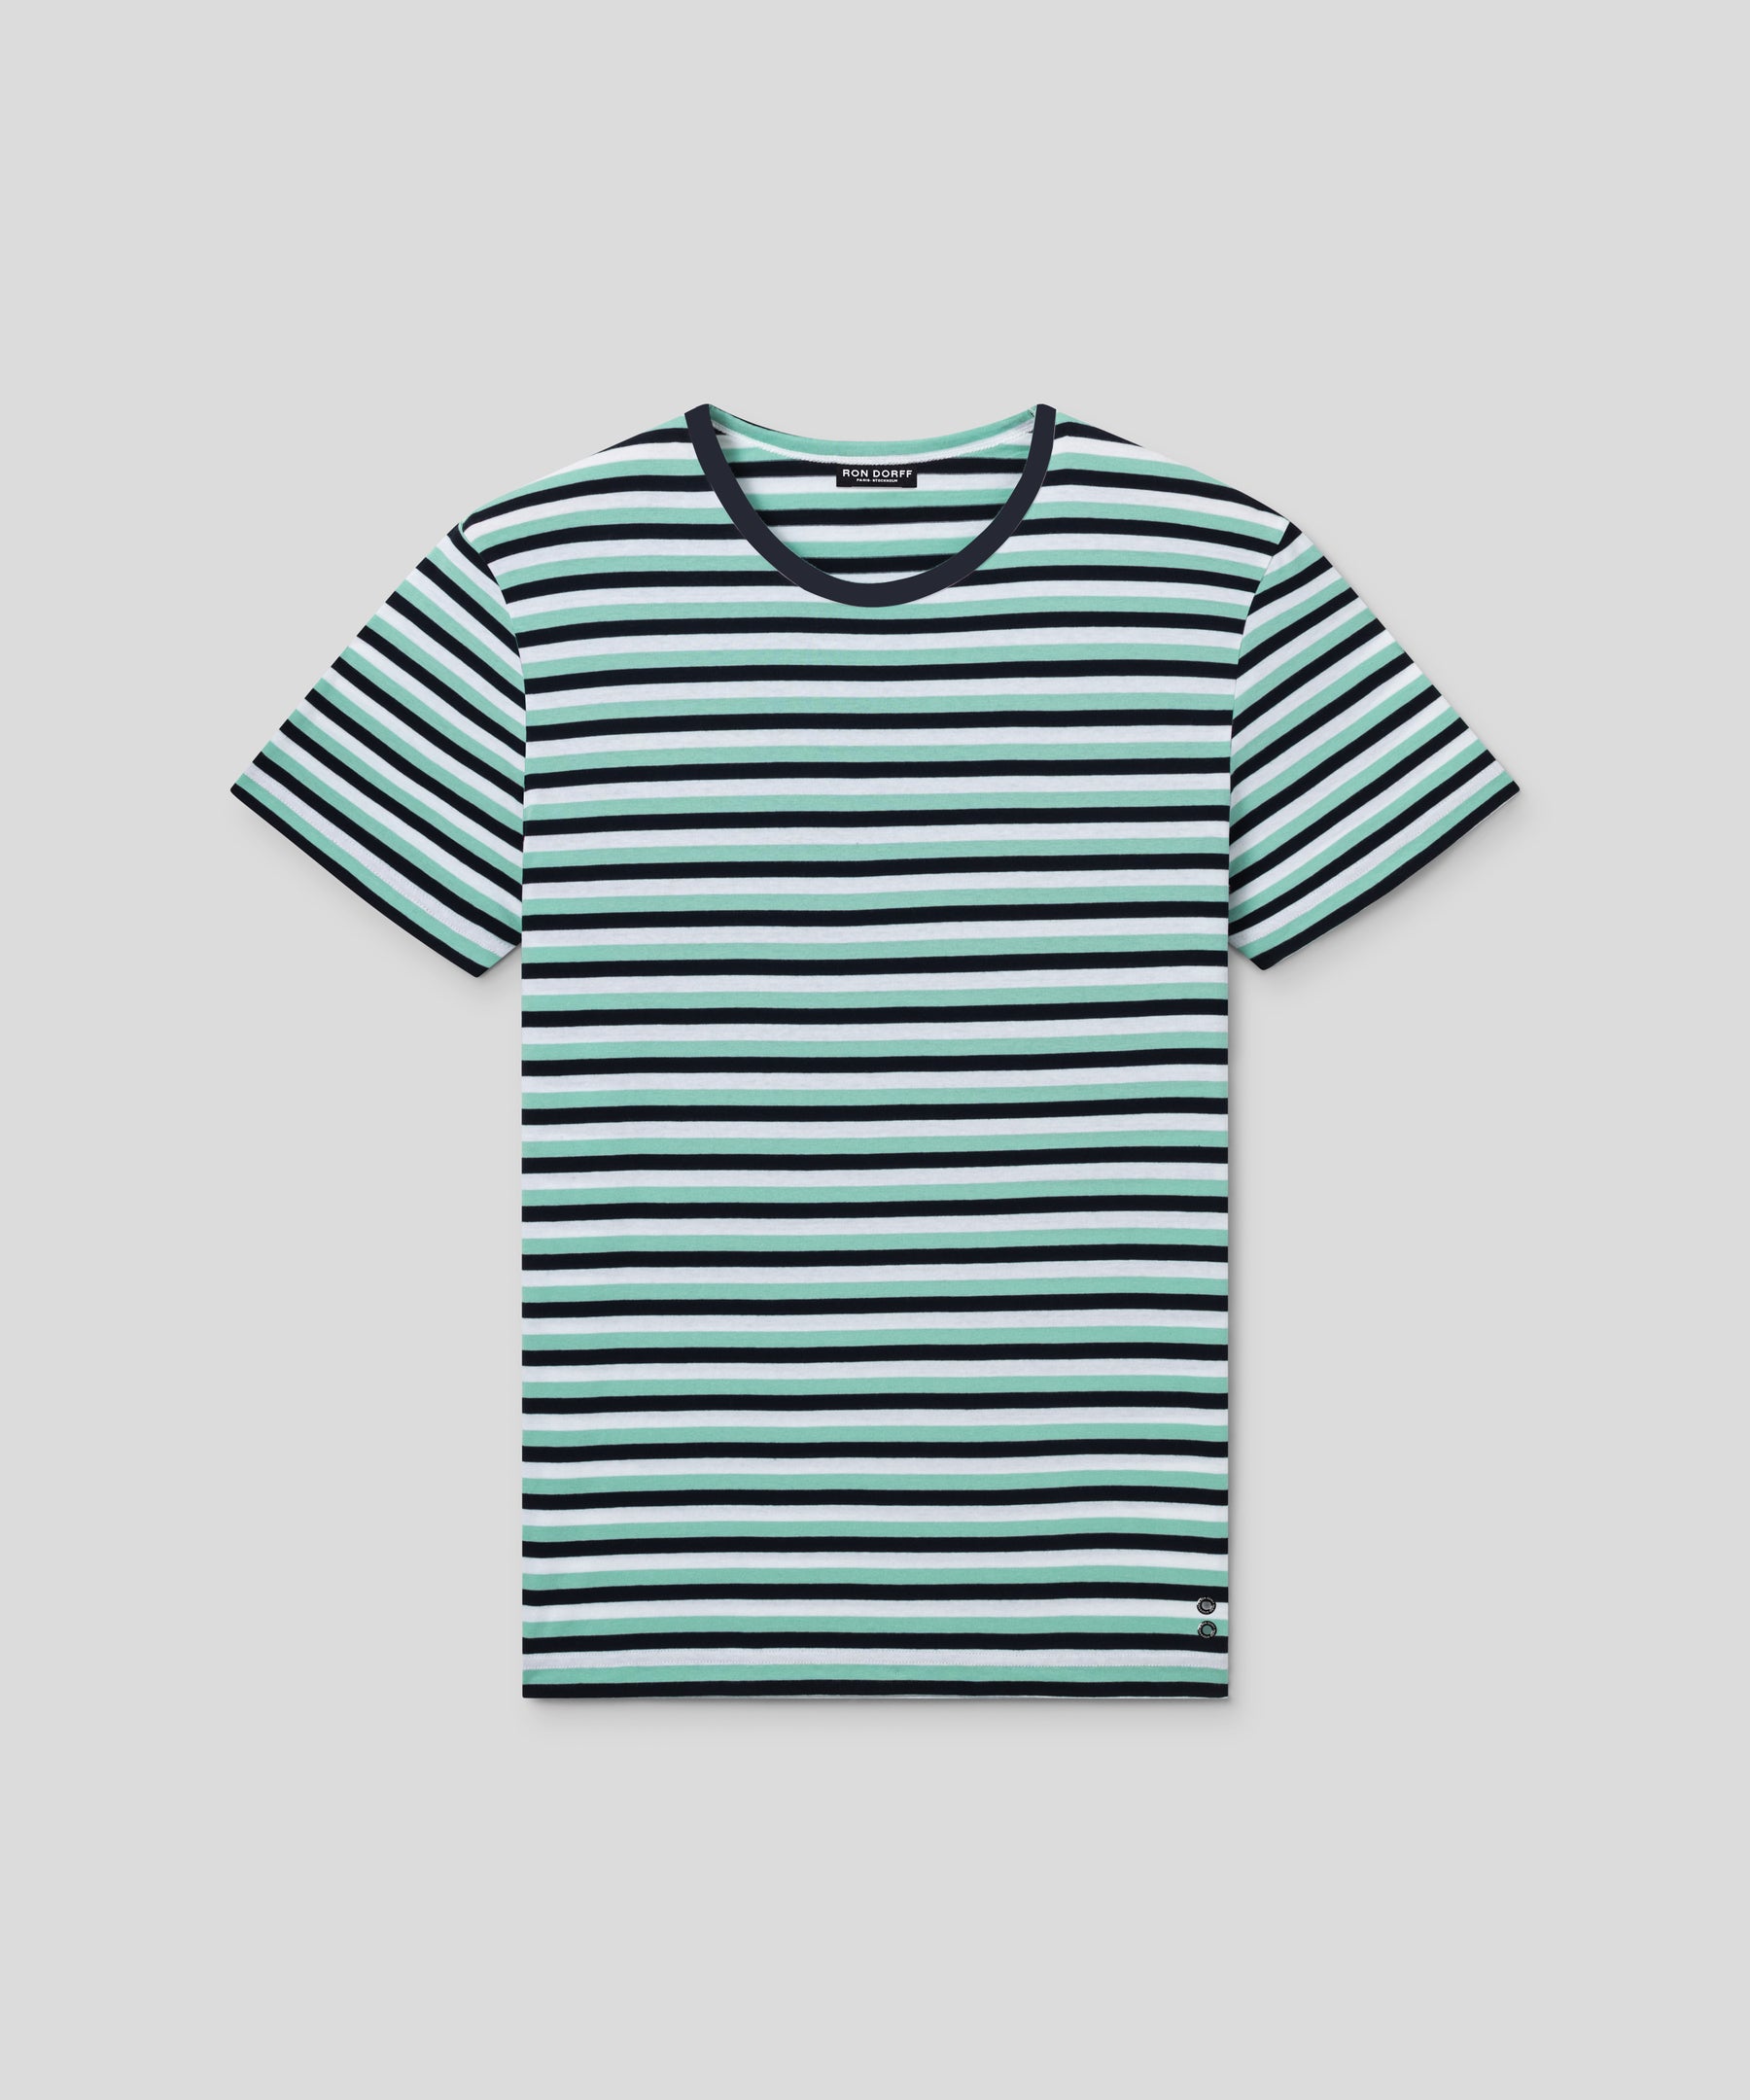 T-shirt col rond en coton avec lignes tricolores: Vert gazon/Bleu marine/Blanc